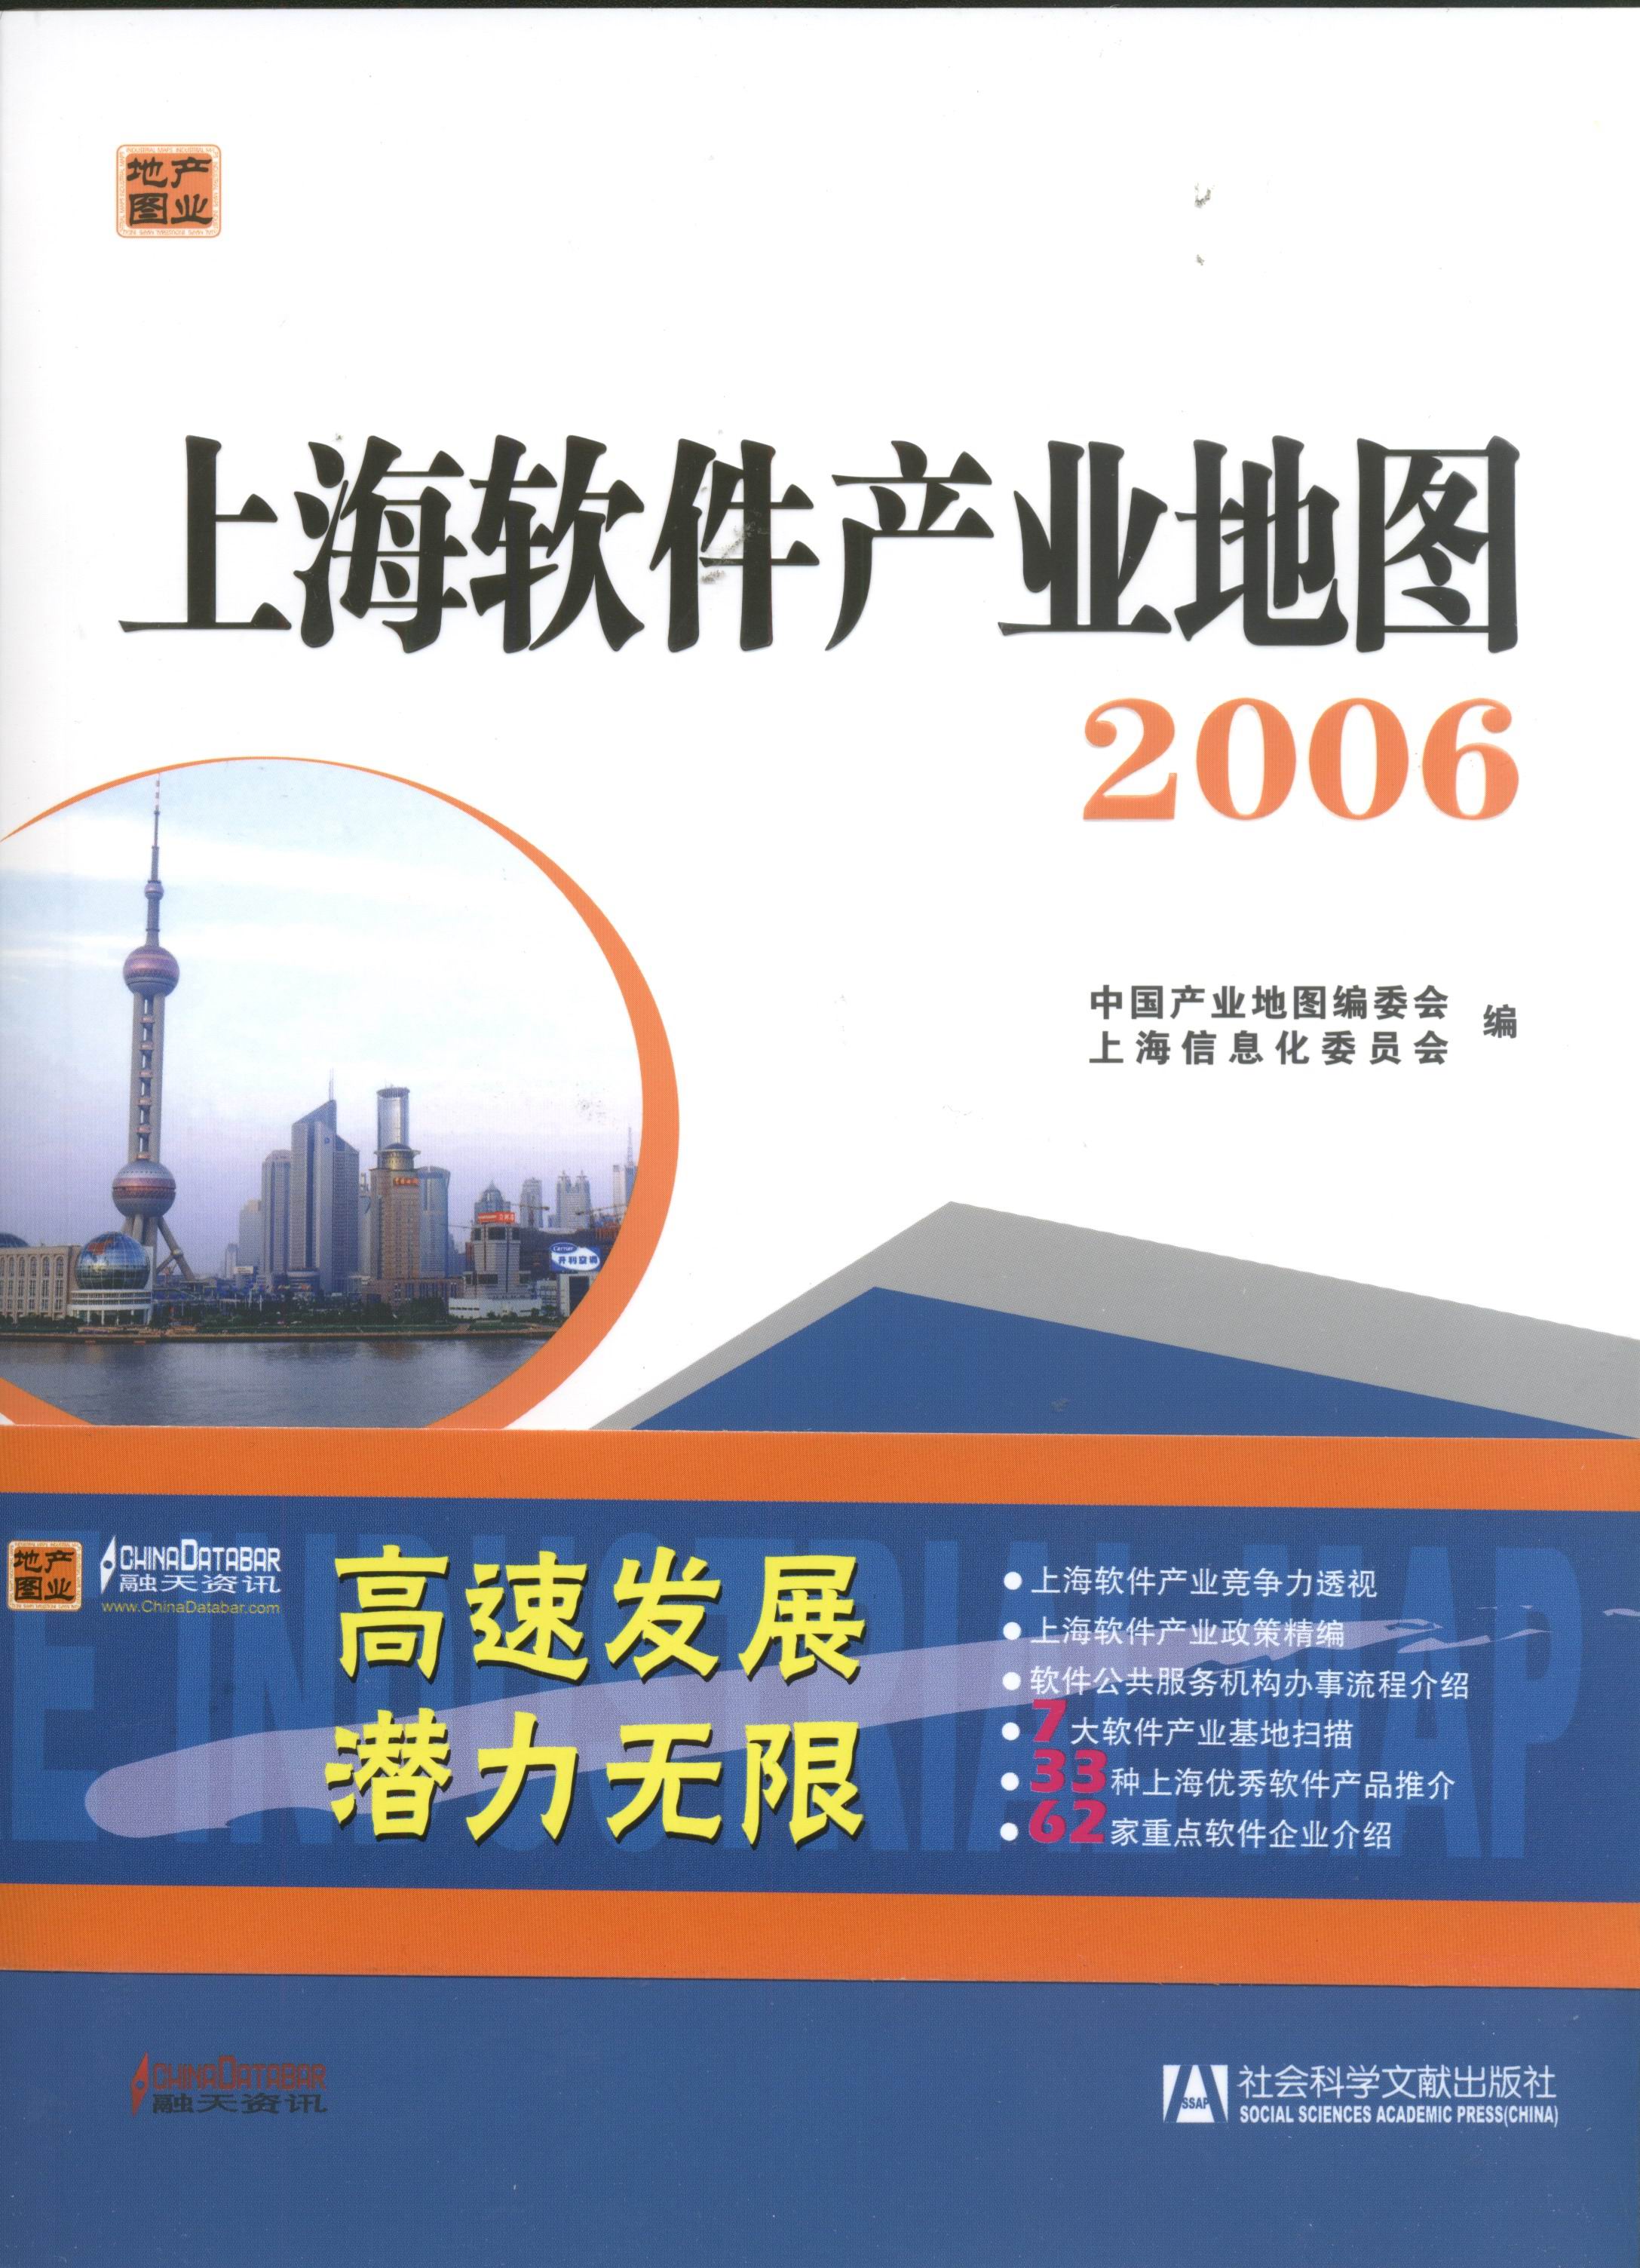 上海软件产业地图-2006